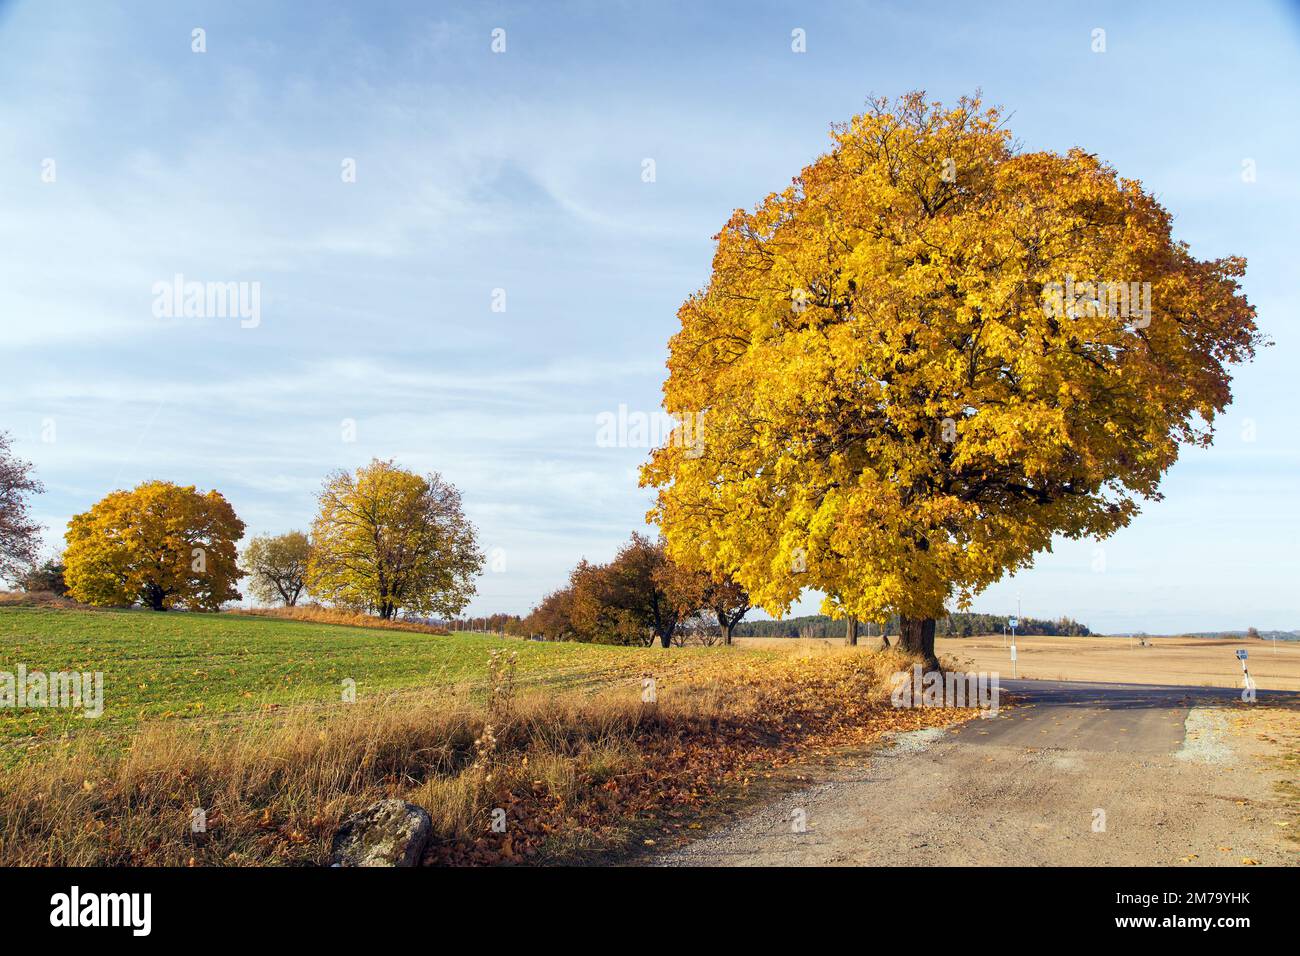 Bunten Laubbäume im Herbst, Ahornbäume mit ländlicher Straße, Blick auf die herbstliche Landschaft Stockfoto